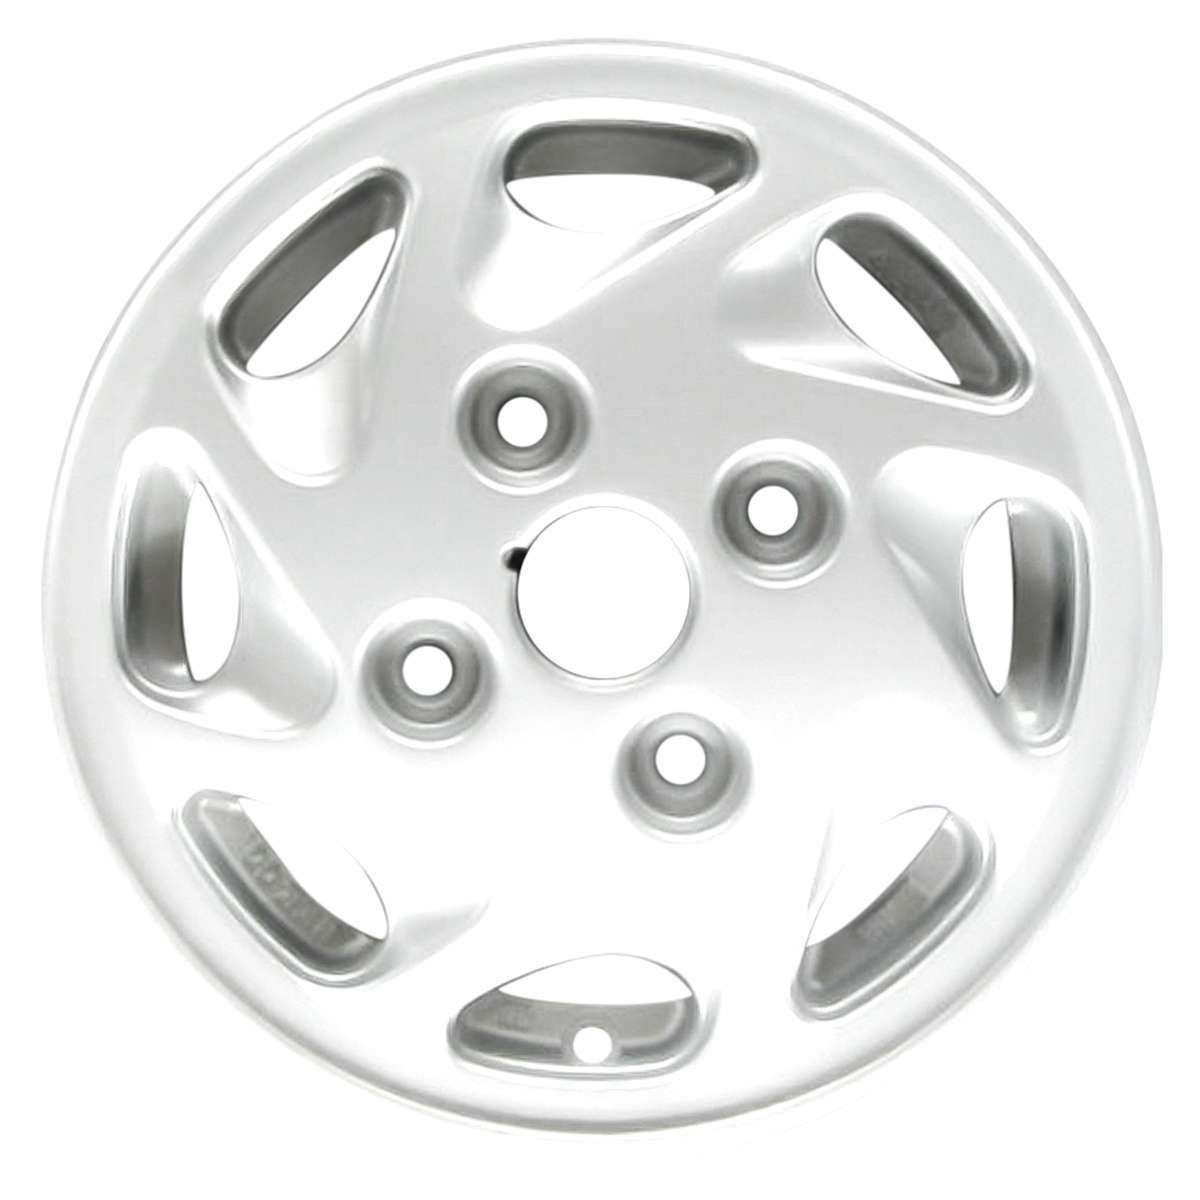 1992 Ford Festiva 12" OEM Wheel Rim W1578W